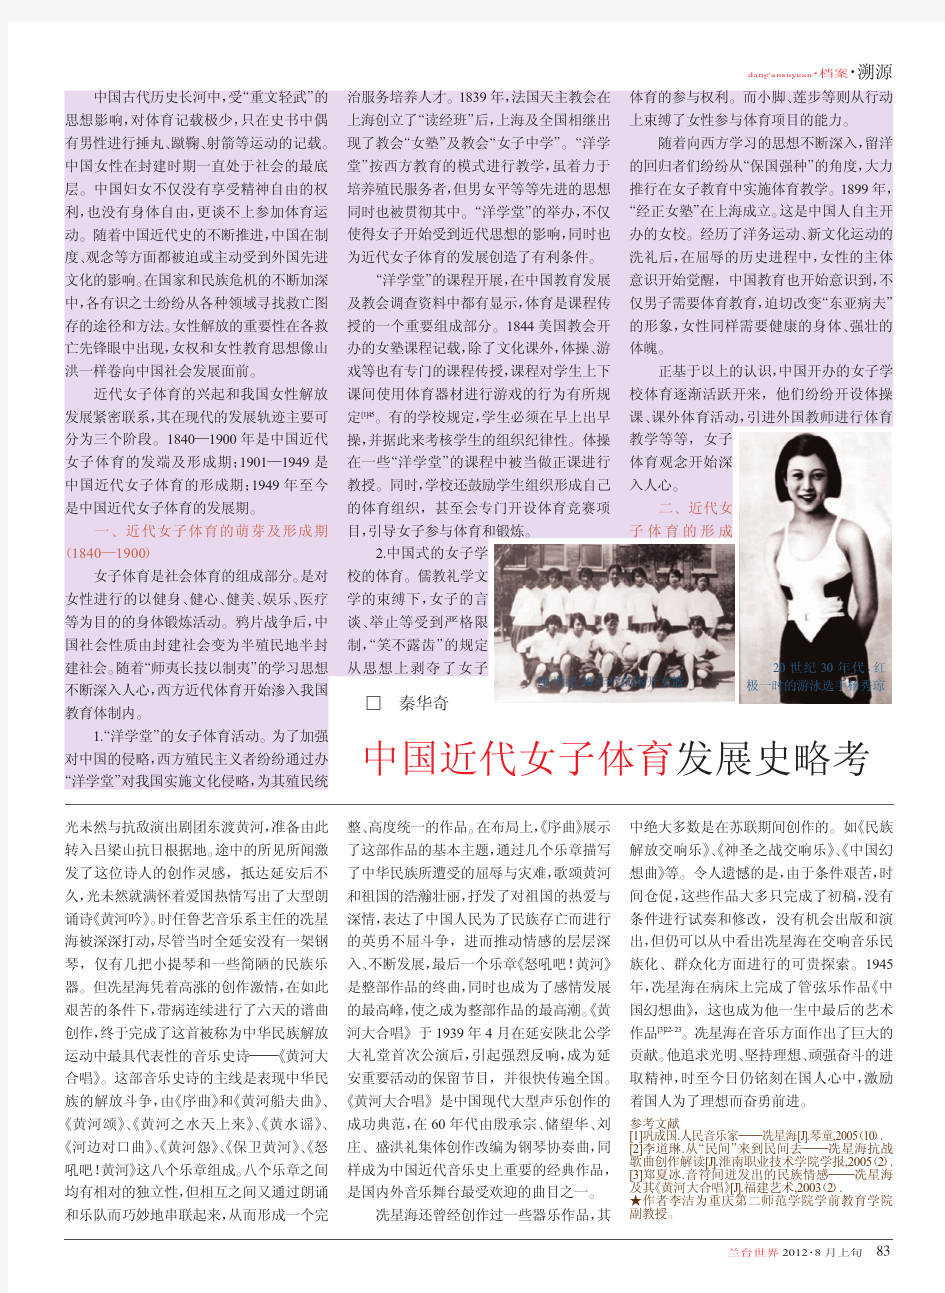 中国近代女子体育发展史略考